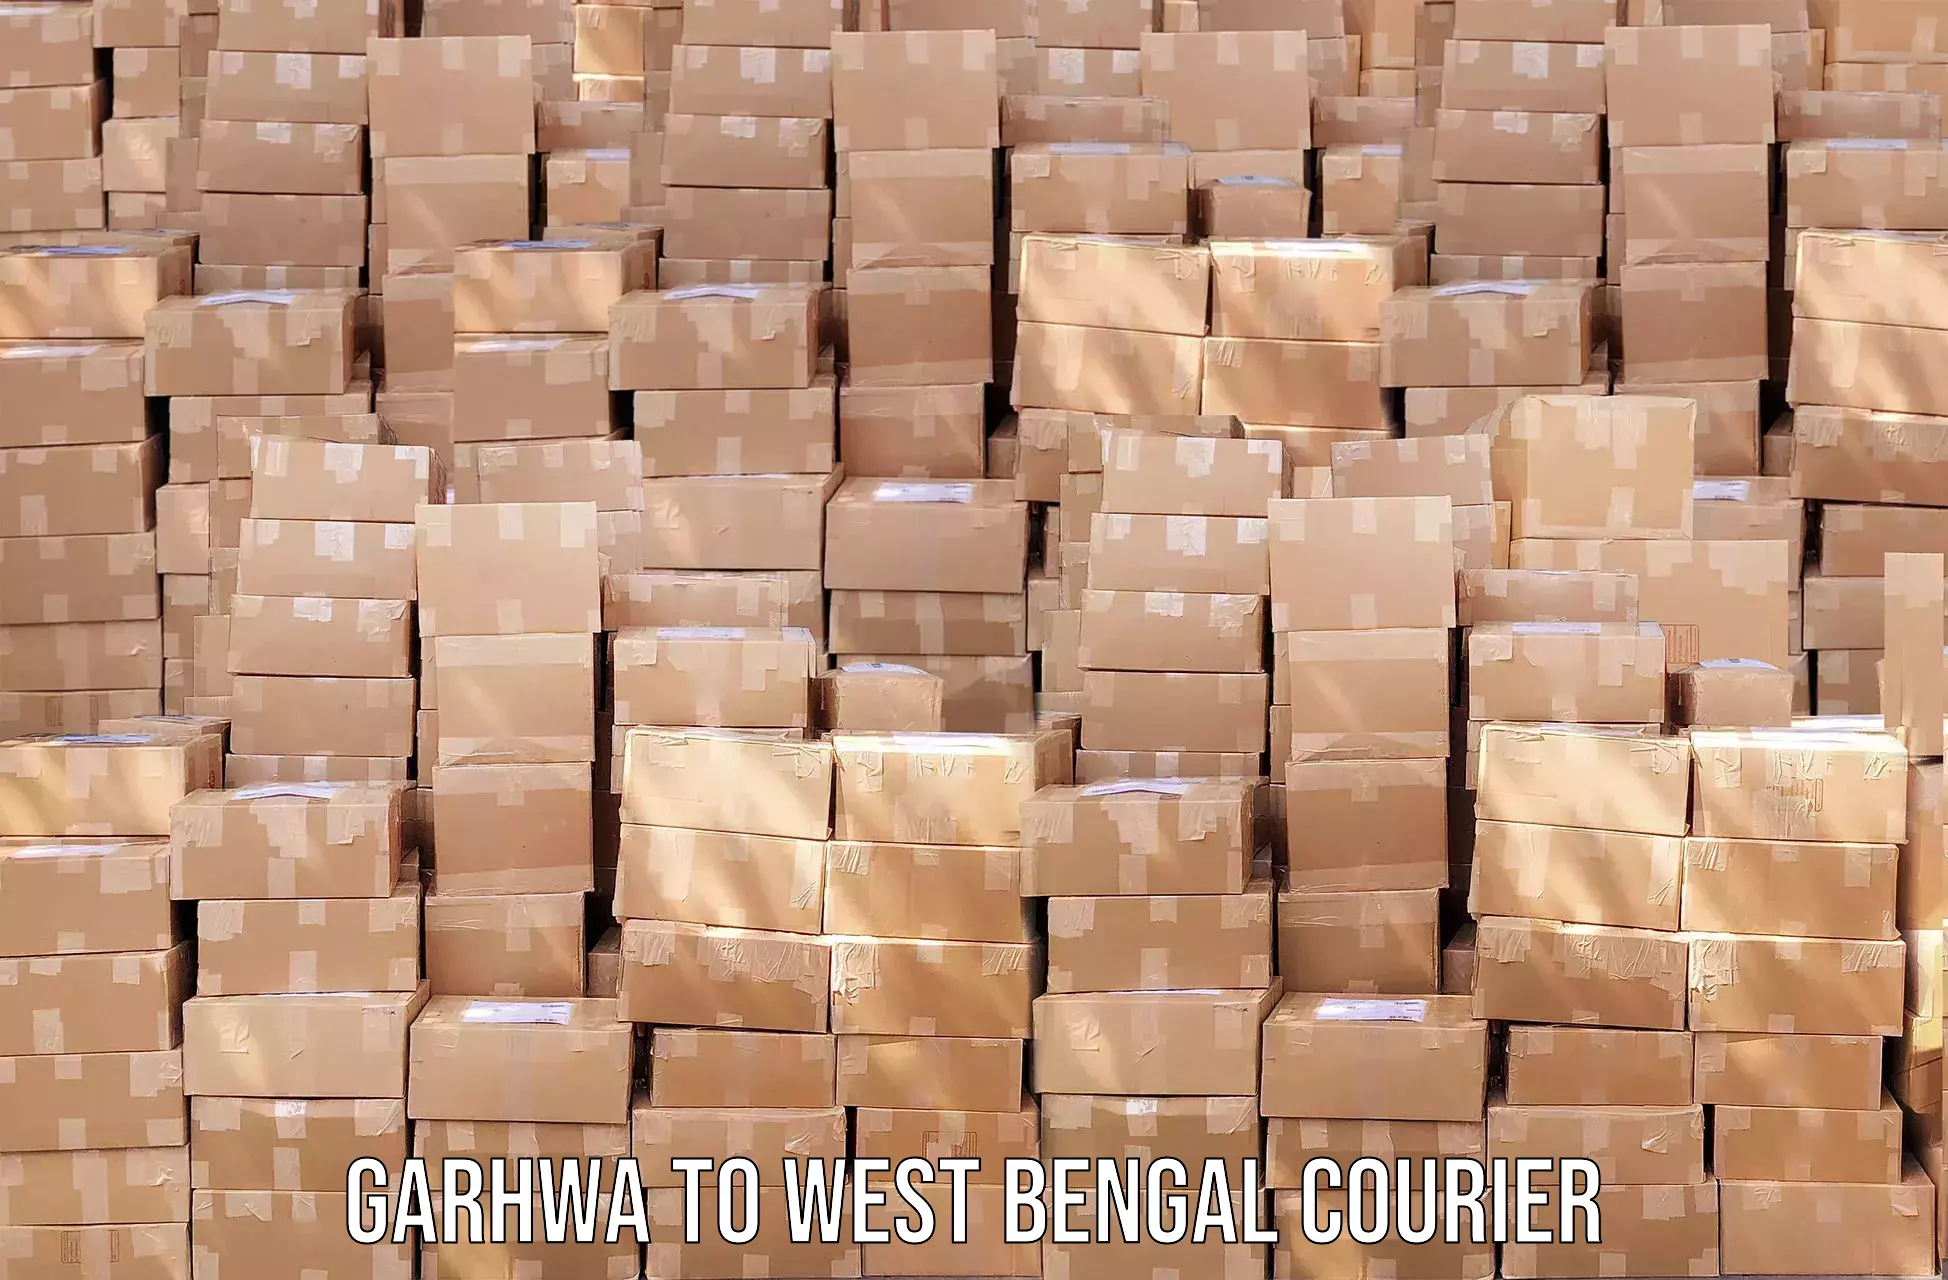 Professional courier handling Garhwa to Kolkata